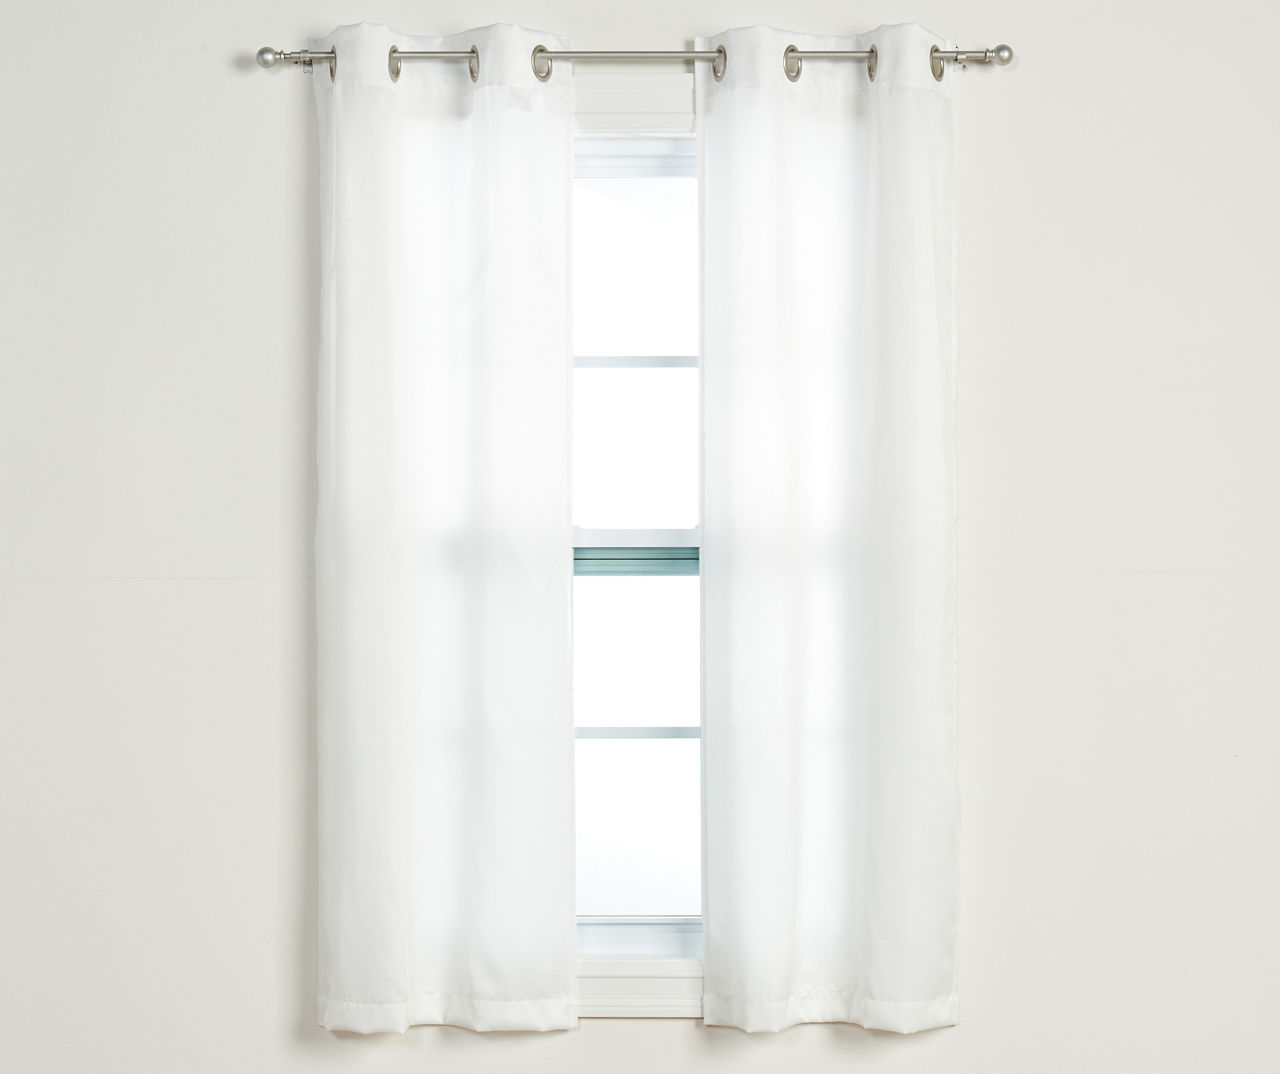 4-Piece Putnam White Room-Darkening Curtain Panels Set, (63")